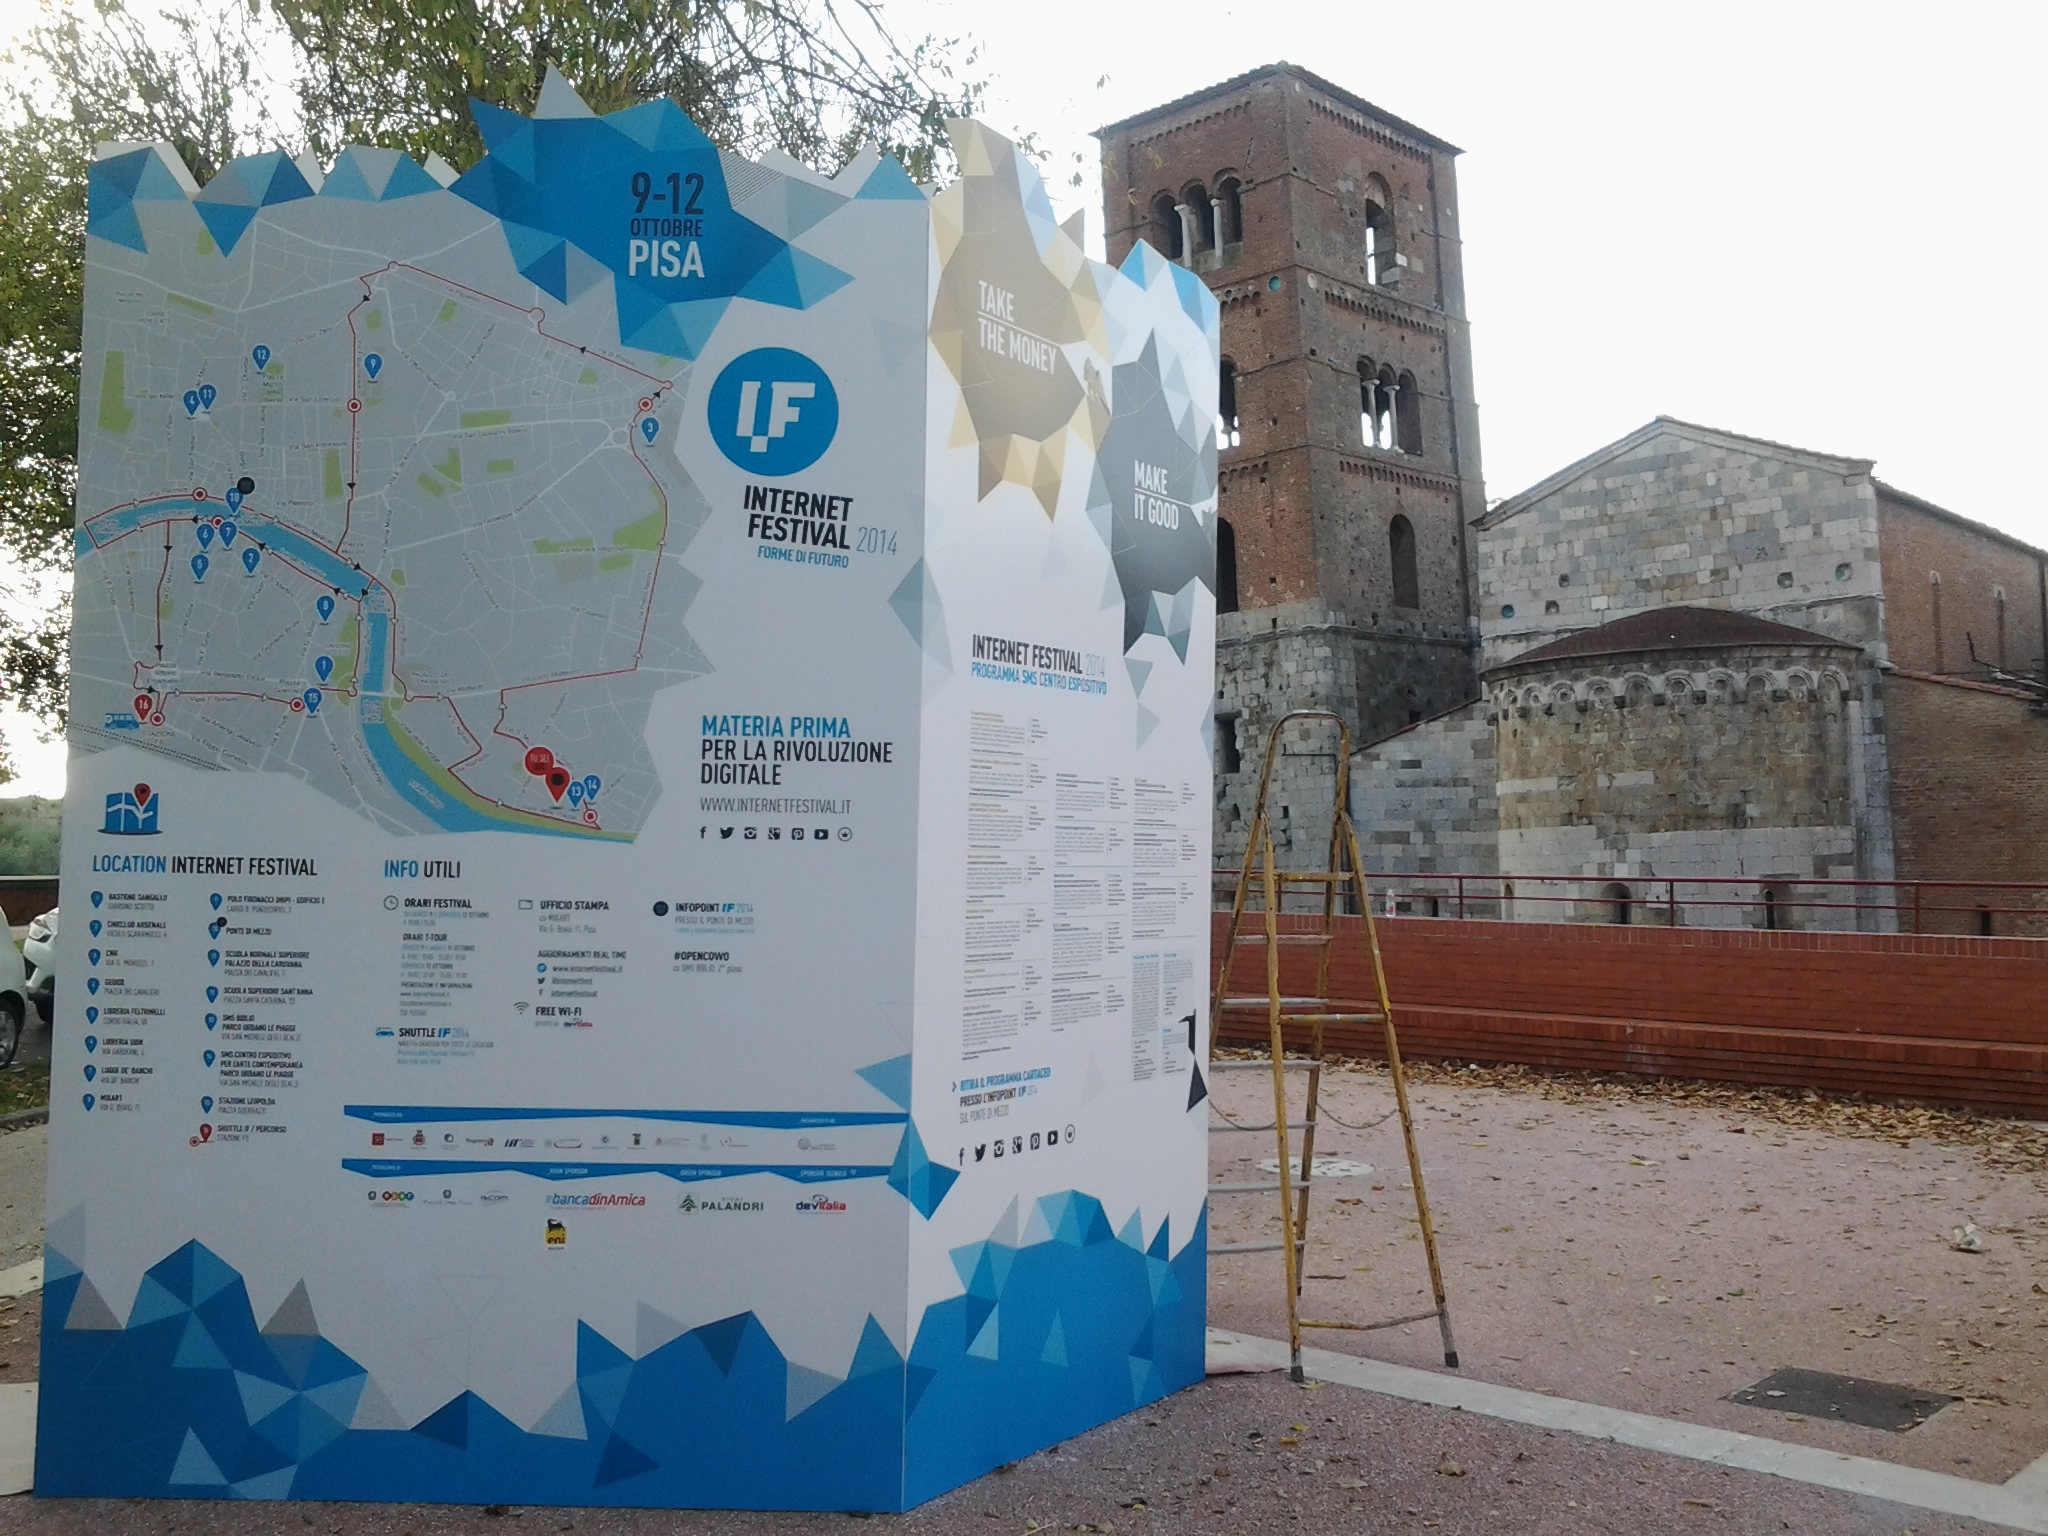 Internet Festival 2014, SMS Pisa